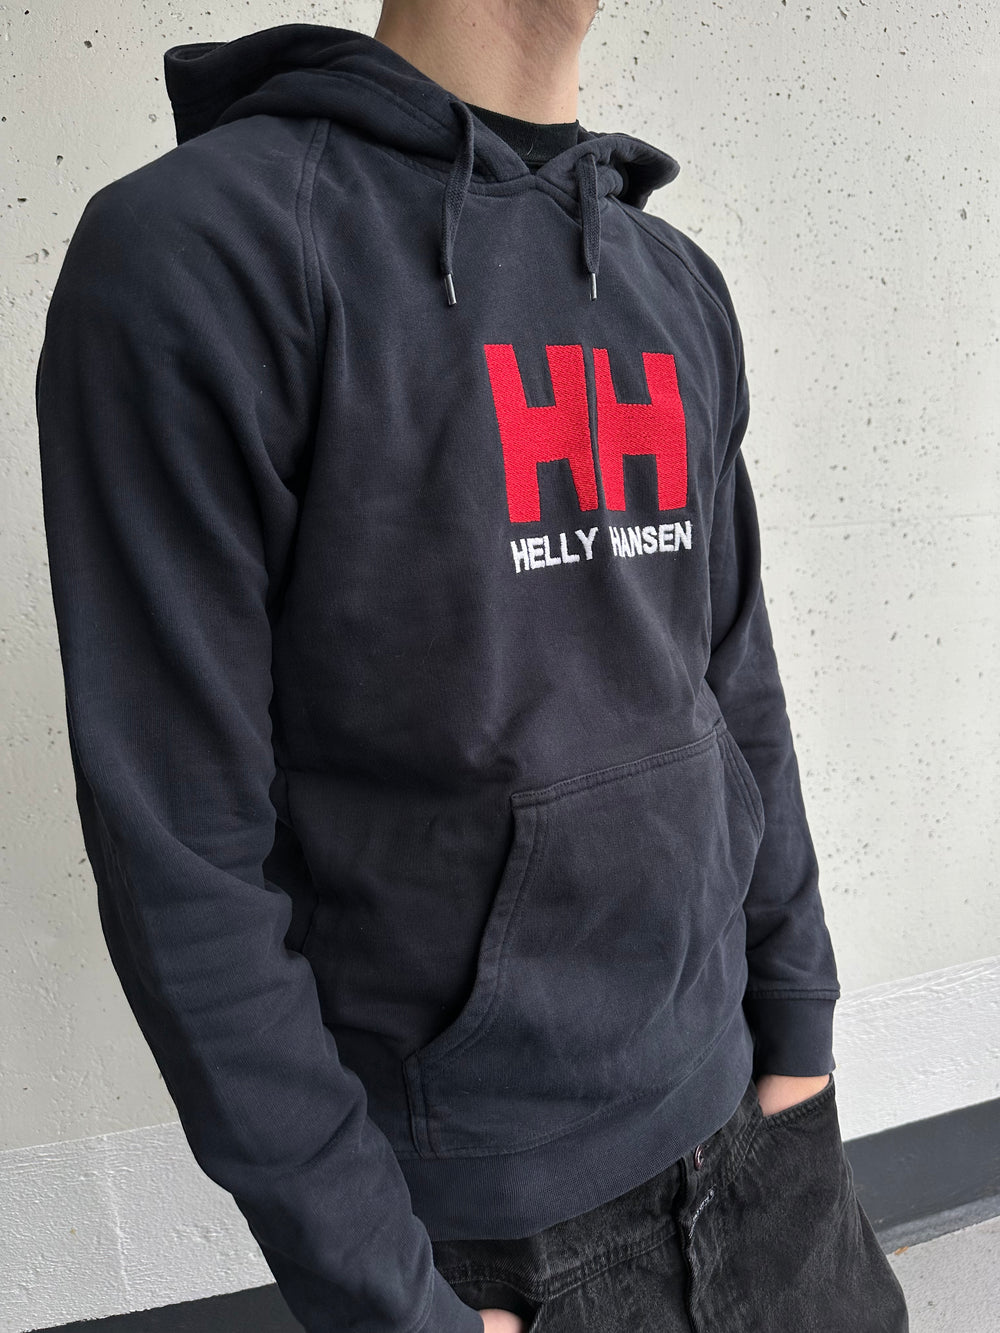 Helly Hansen embroidered Hoodie (M)